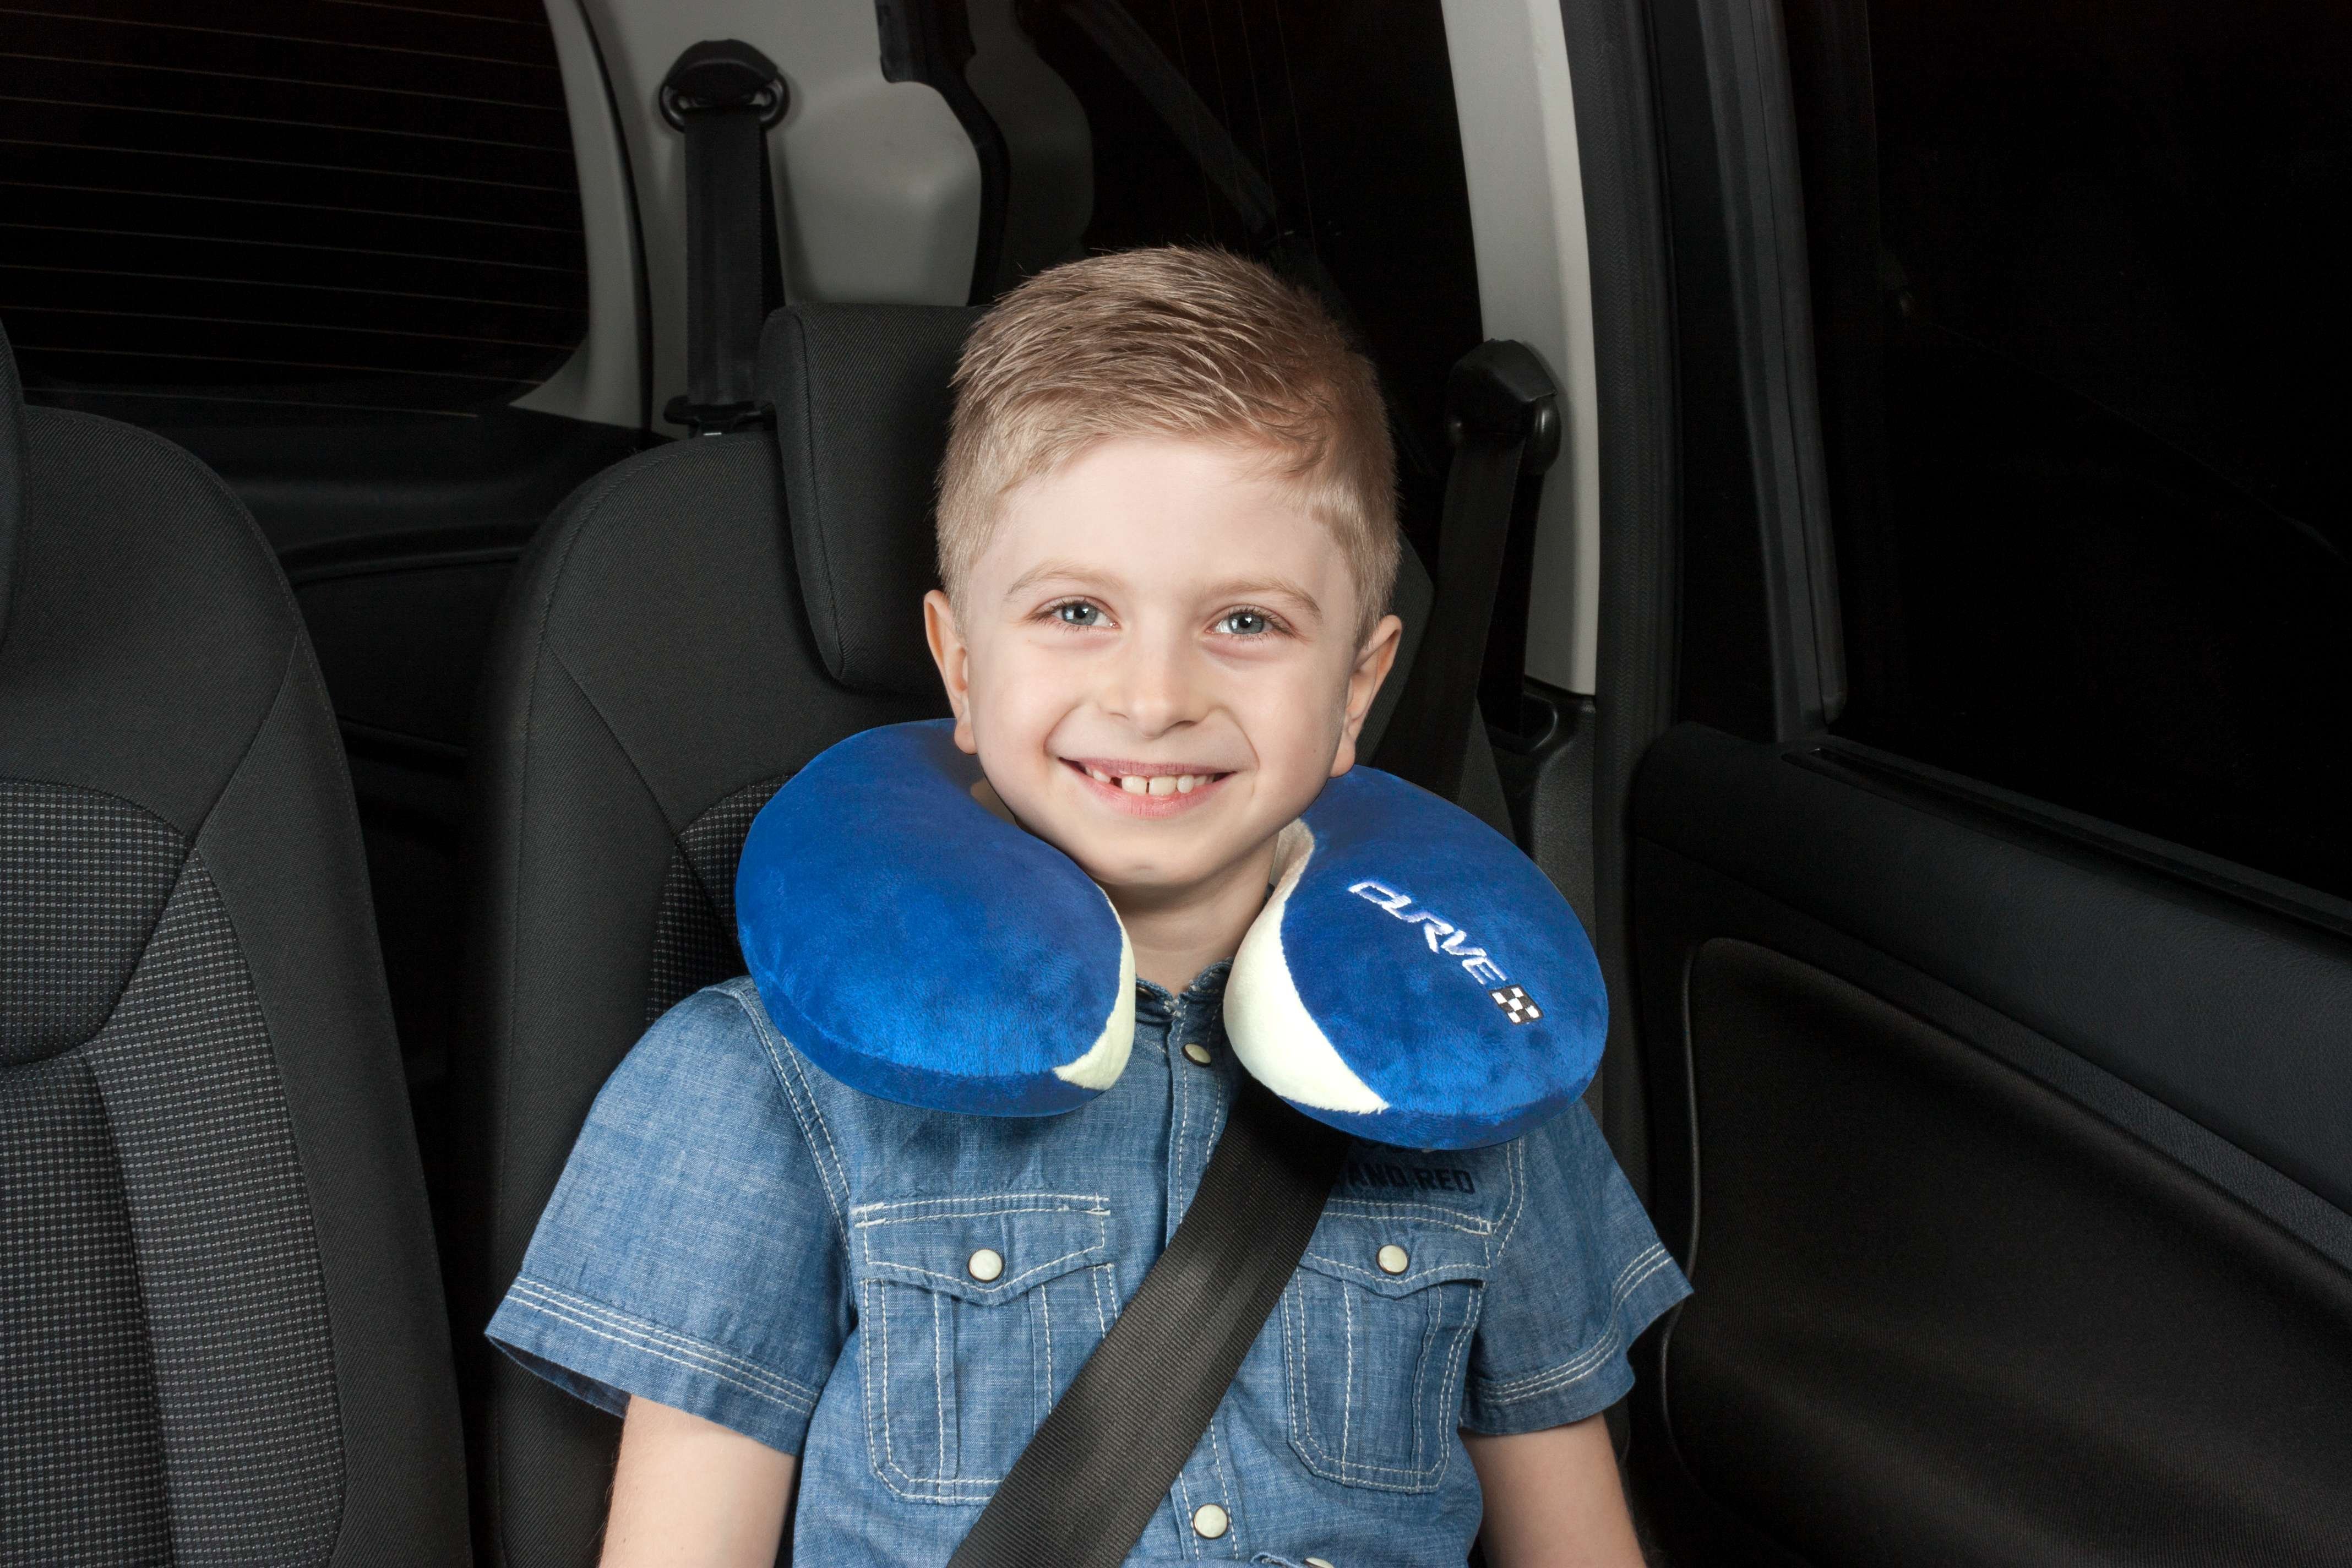 Curve nekrol | nekkussen voor kinderen | neksteun en nekkussen in blauw vanaf 5 jaar